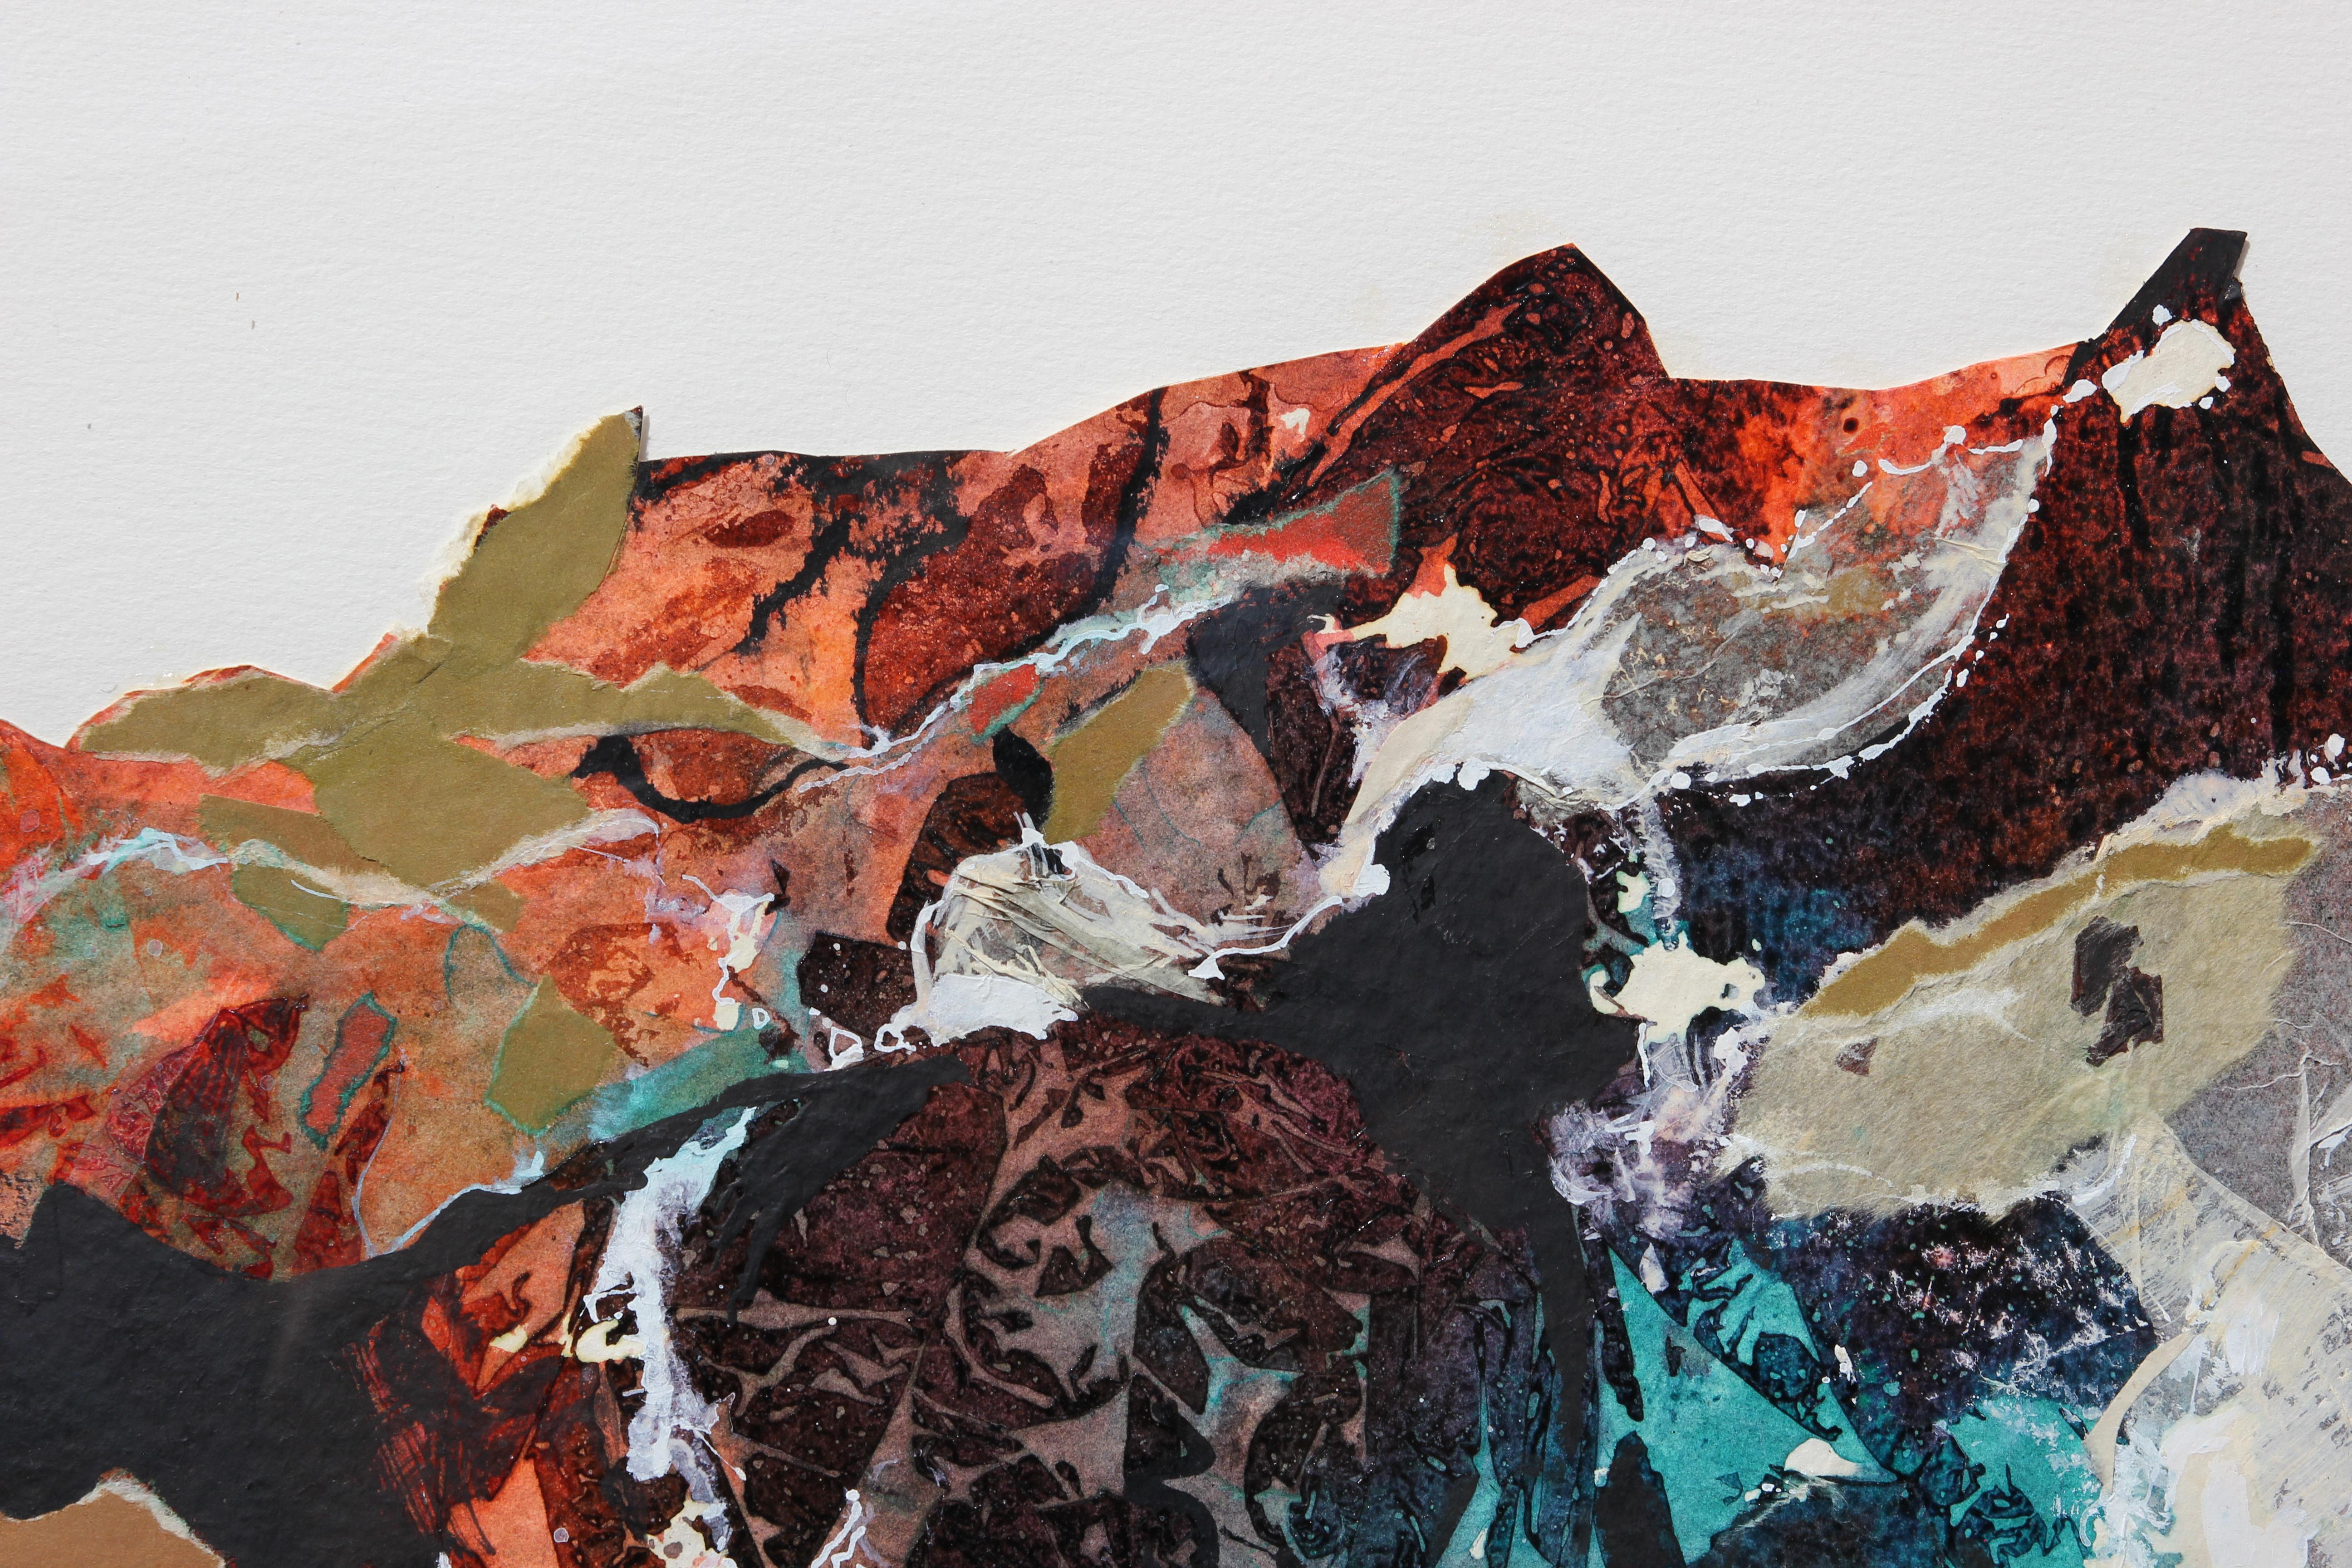 Peinture abstraite moderne de paysage aux tons neutres, réalisée par l'artiste texane Carole Myers. L'œuvre présente un collage de différents papiers texturés combinés à des peintures acryliques pour représenter la chaîne de montagnes Sierra Madre